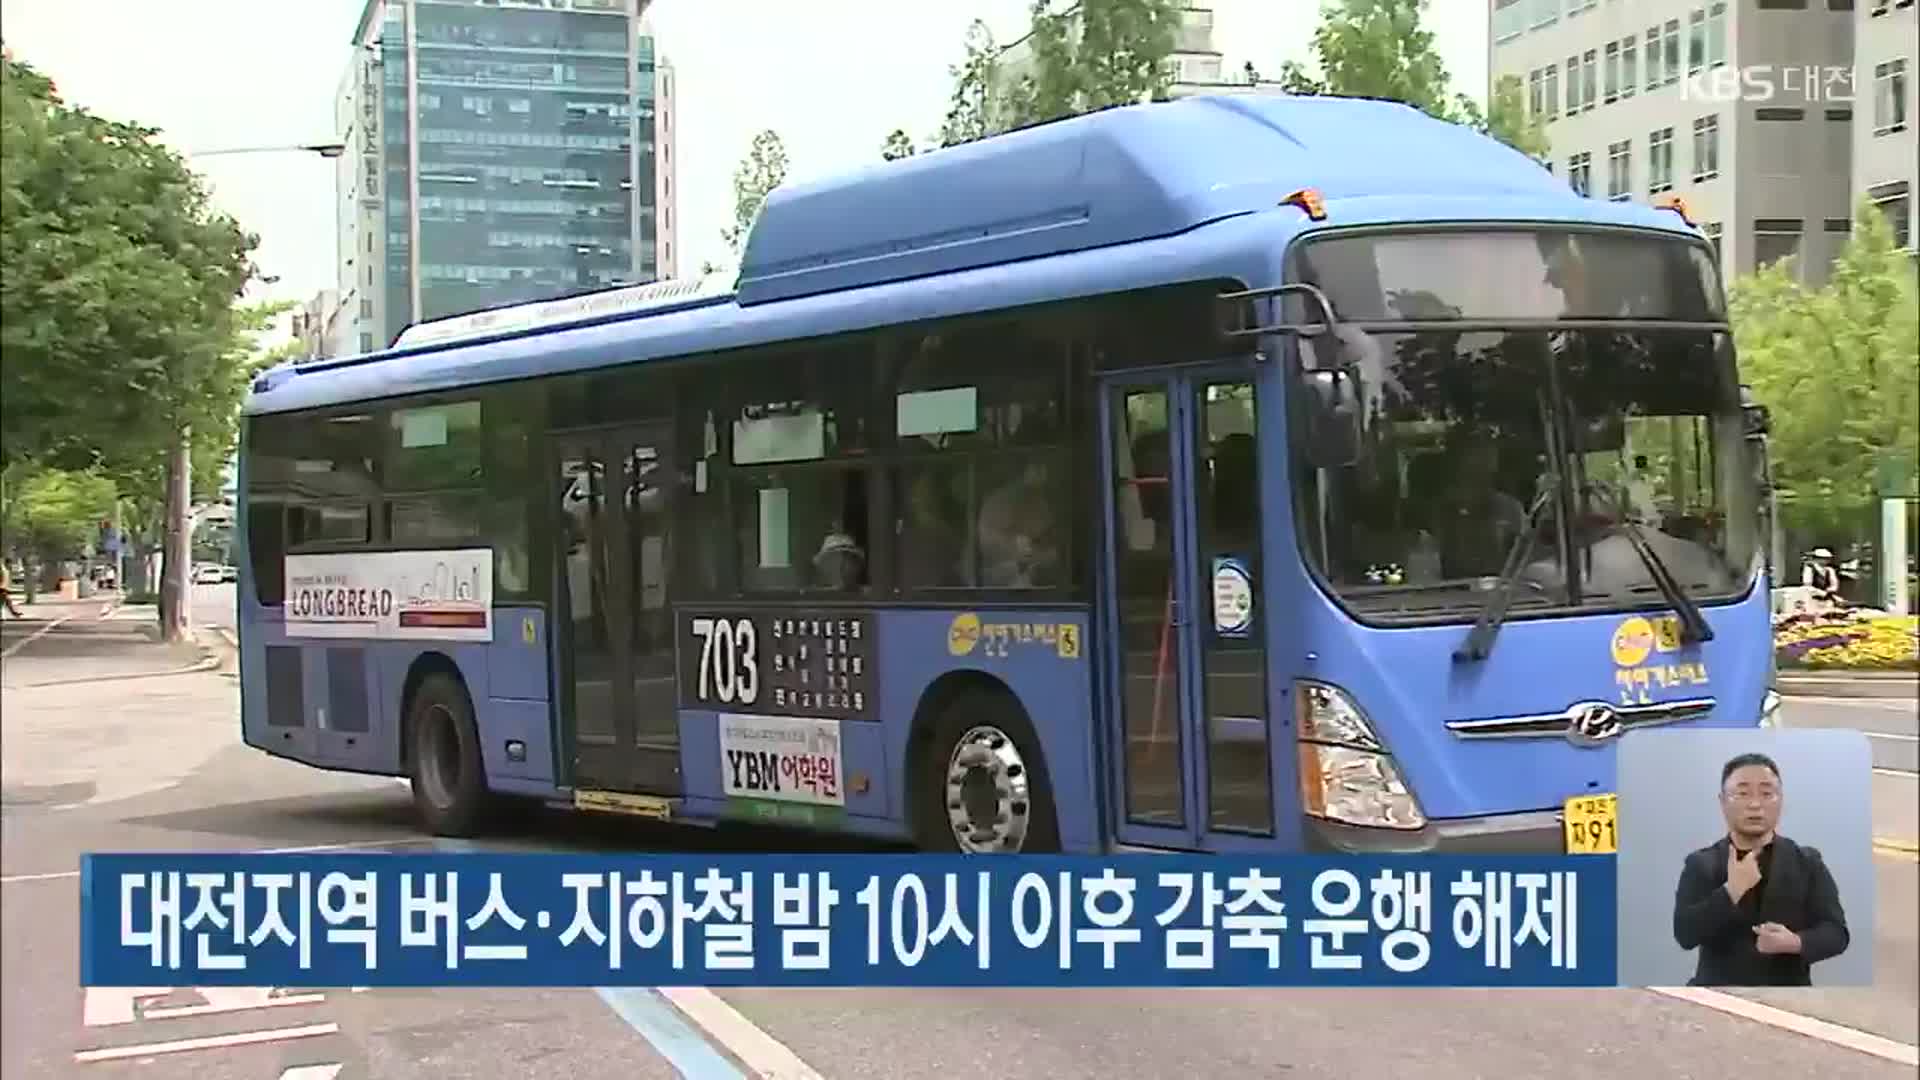 대전지역 버스·지하철 밤 10시 이후 감축 운행 해제